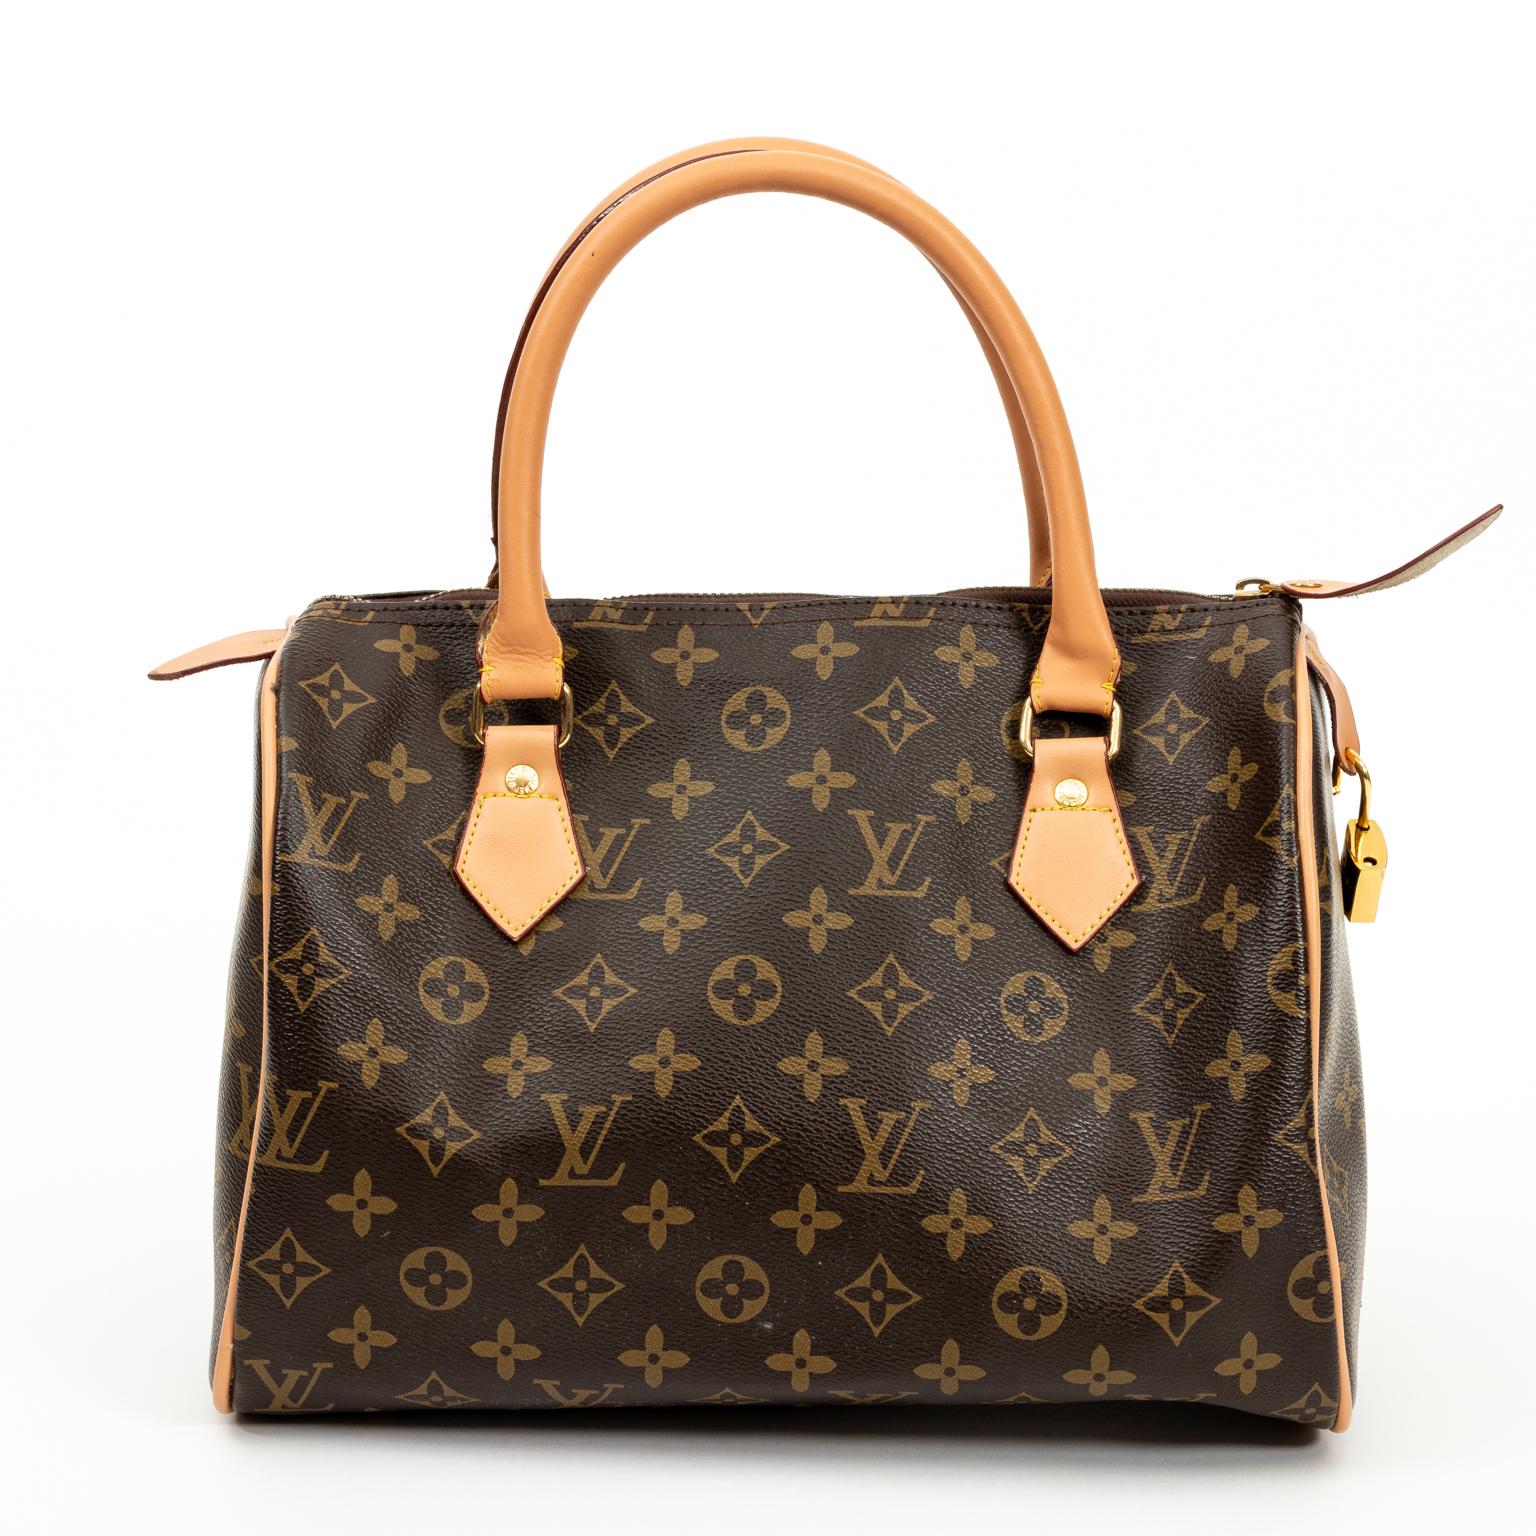 Authentic Louis Vuitton Handbag 1